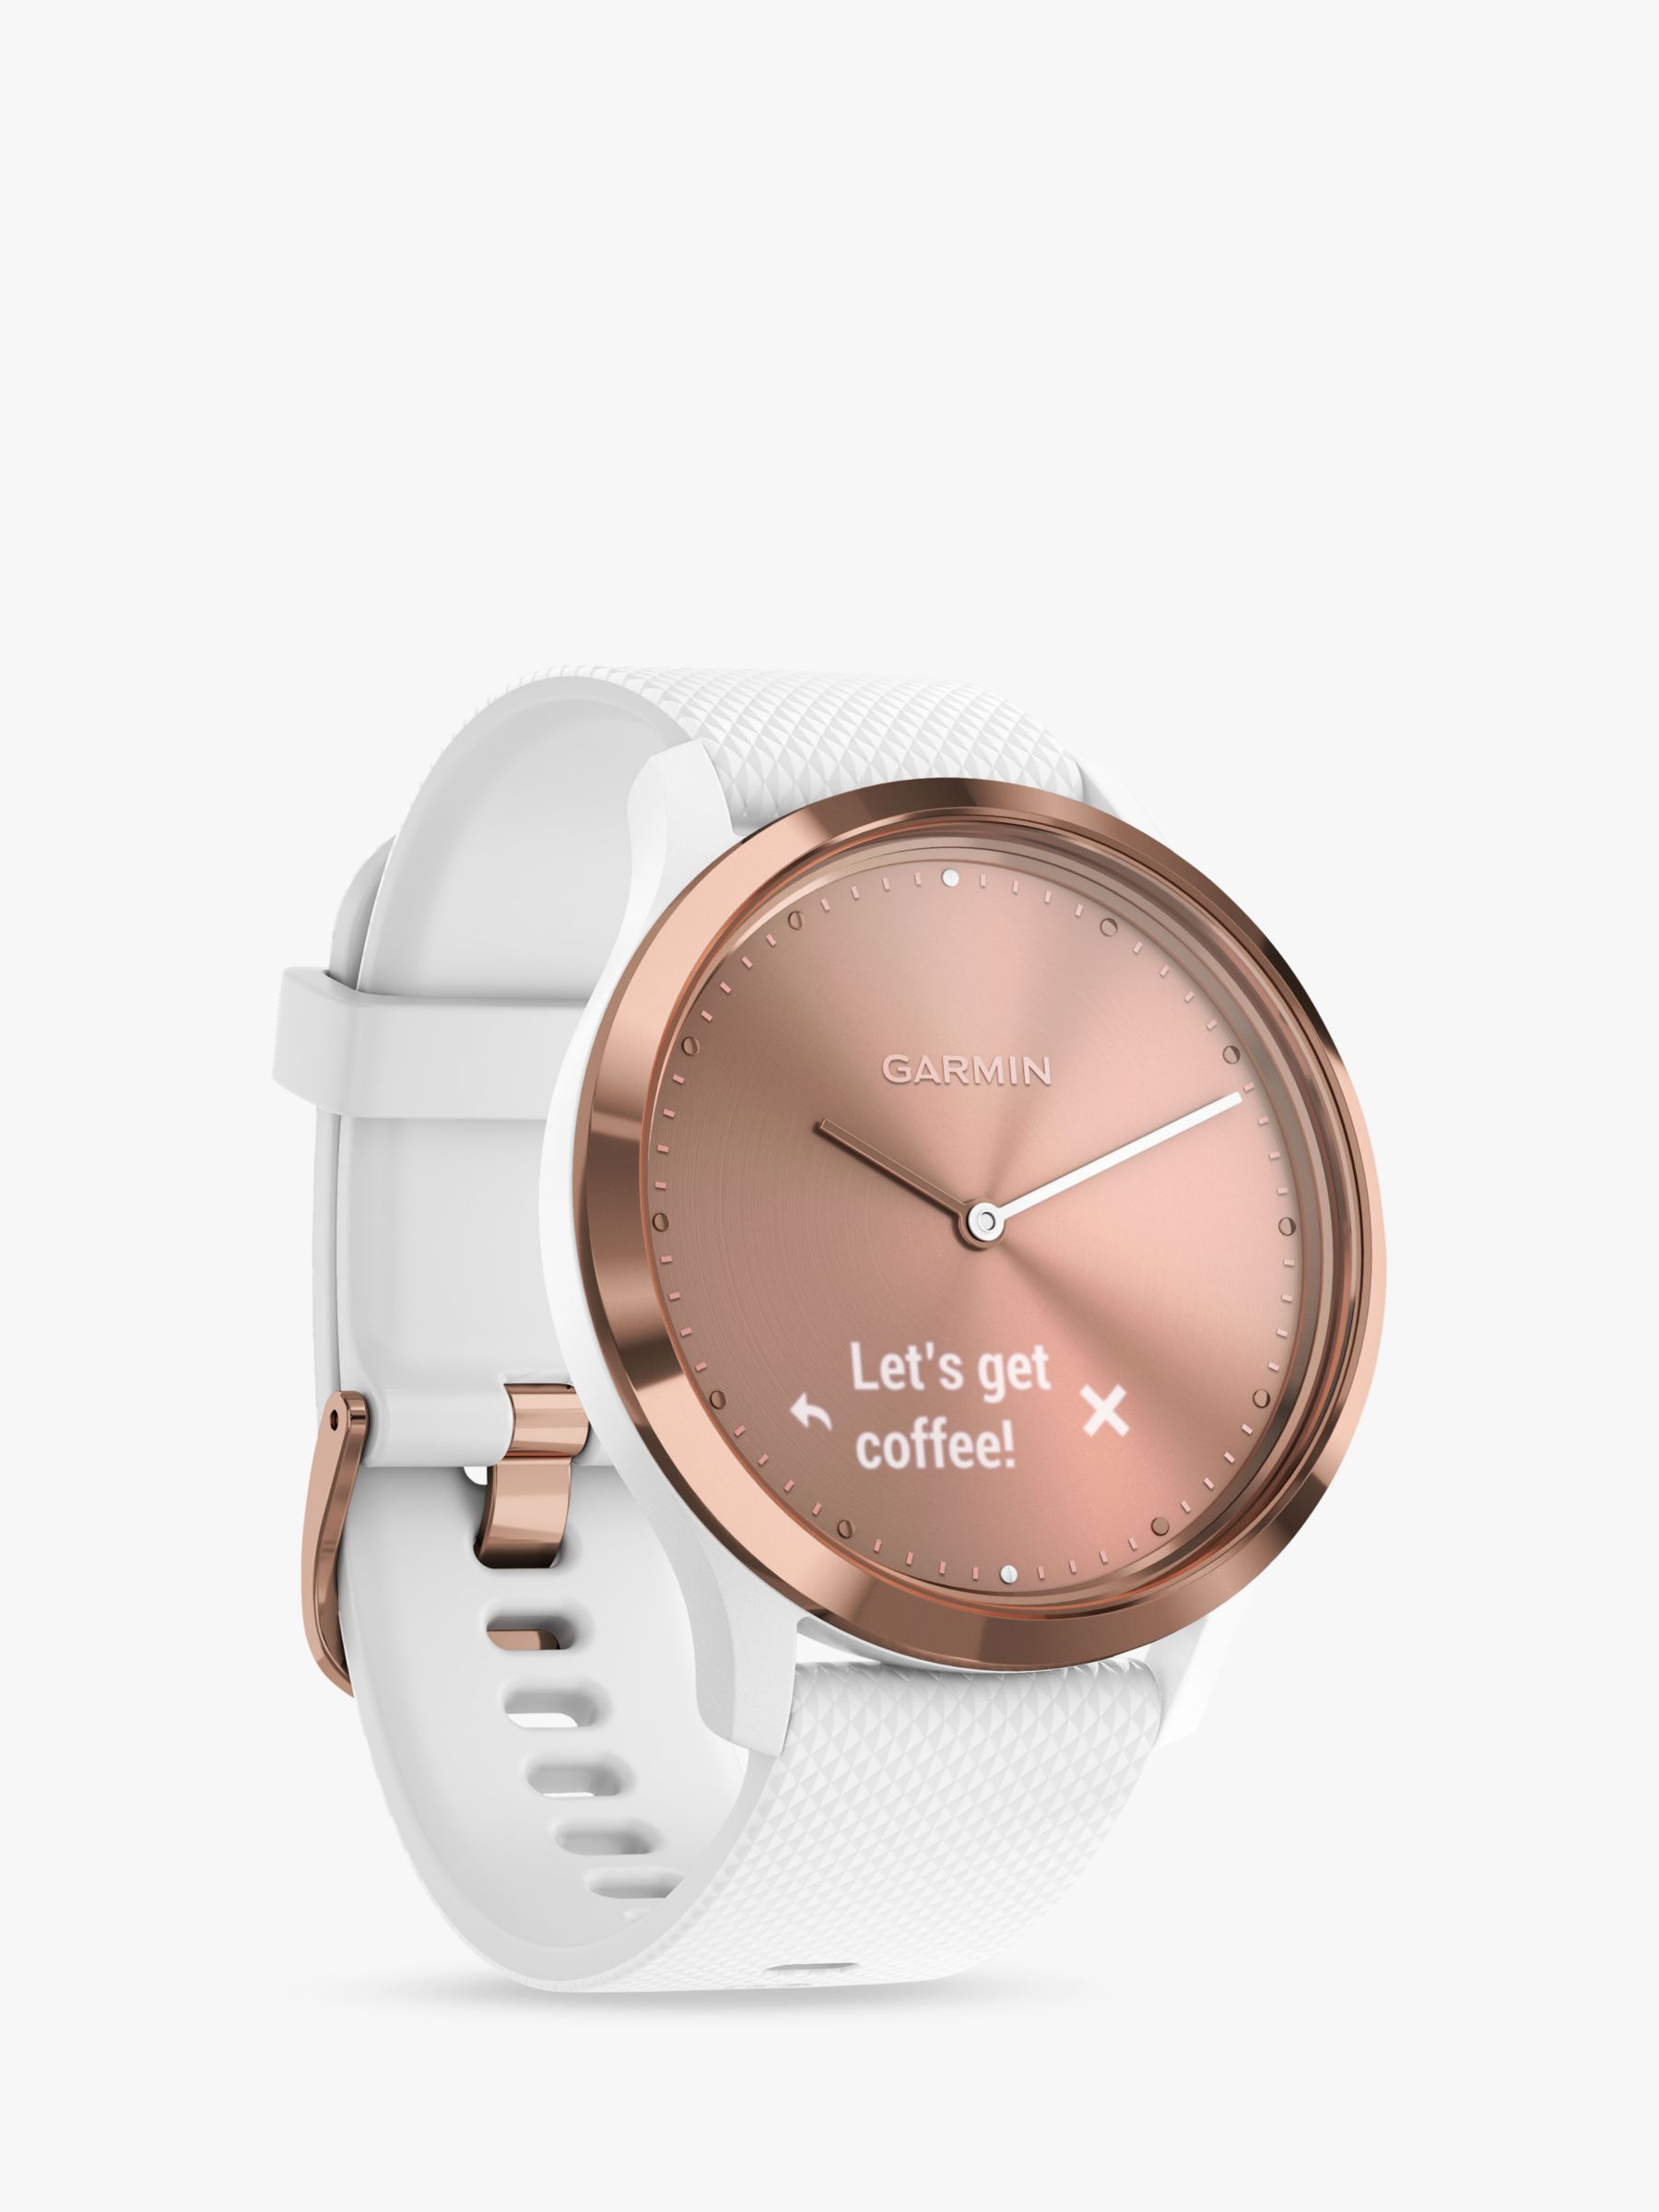 polo ralph lauren smart watch